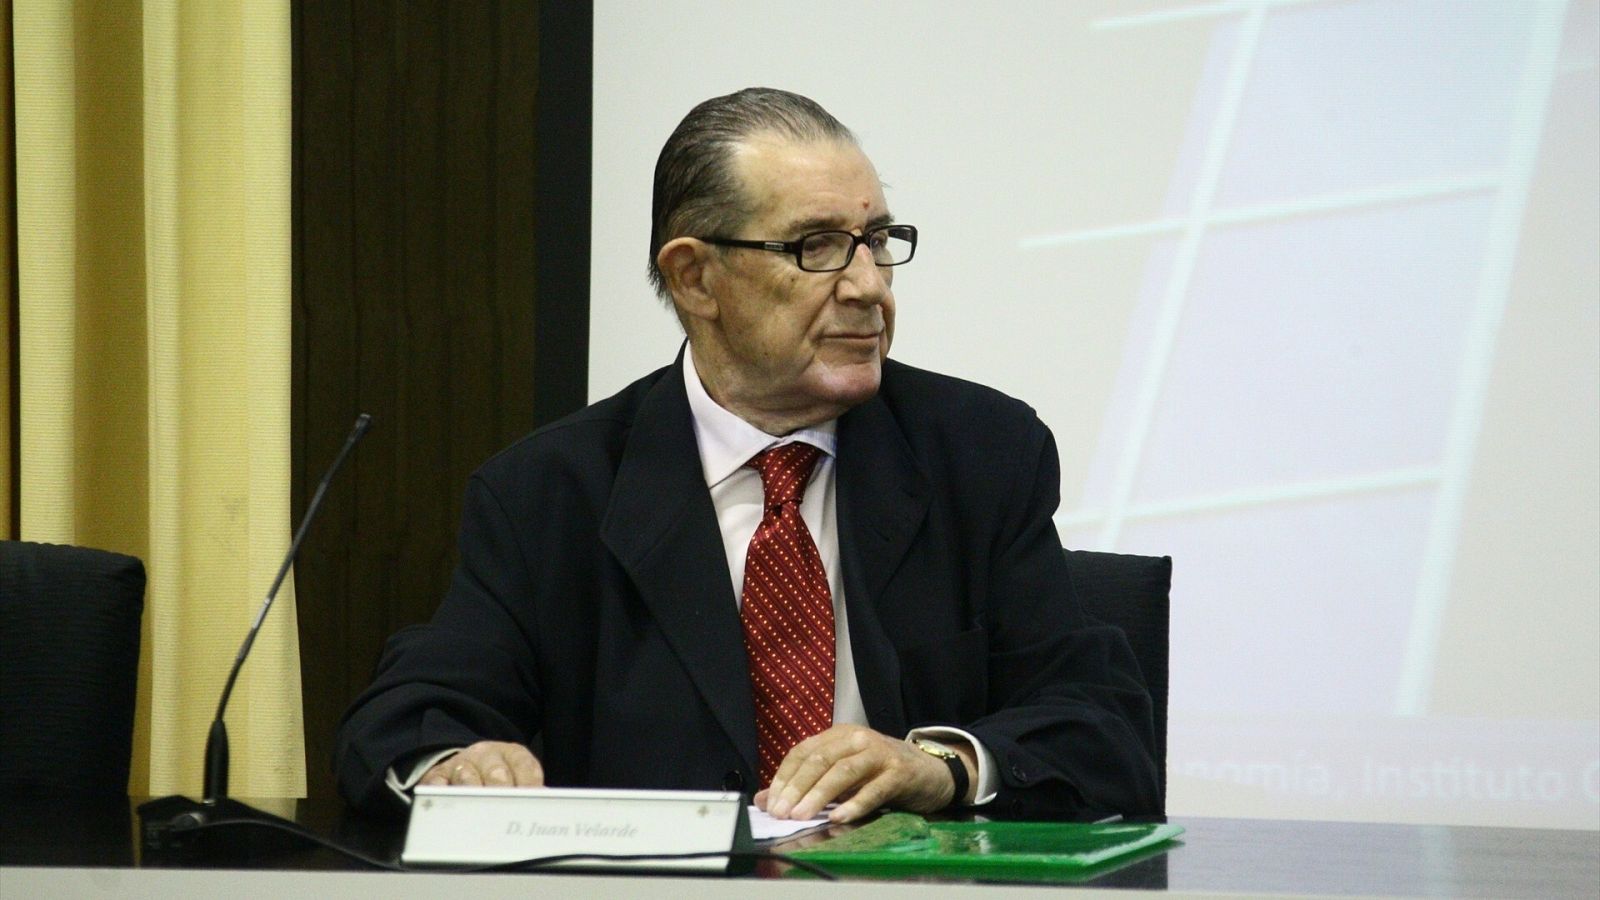 Juan Velarde en una imagen de archivo tomada en 2011